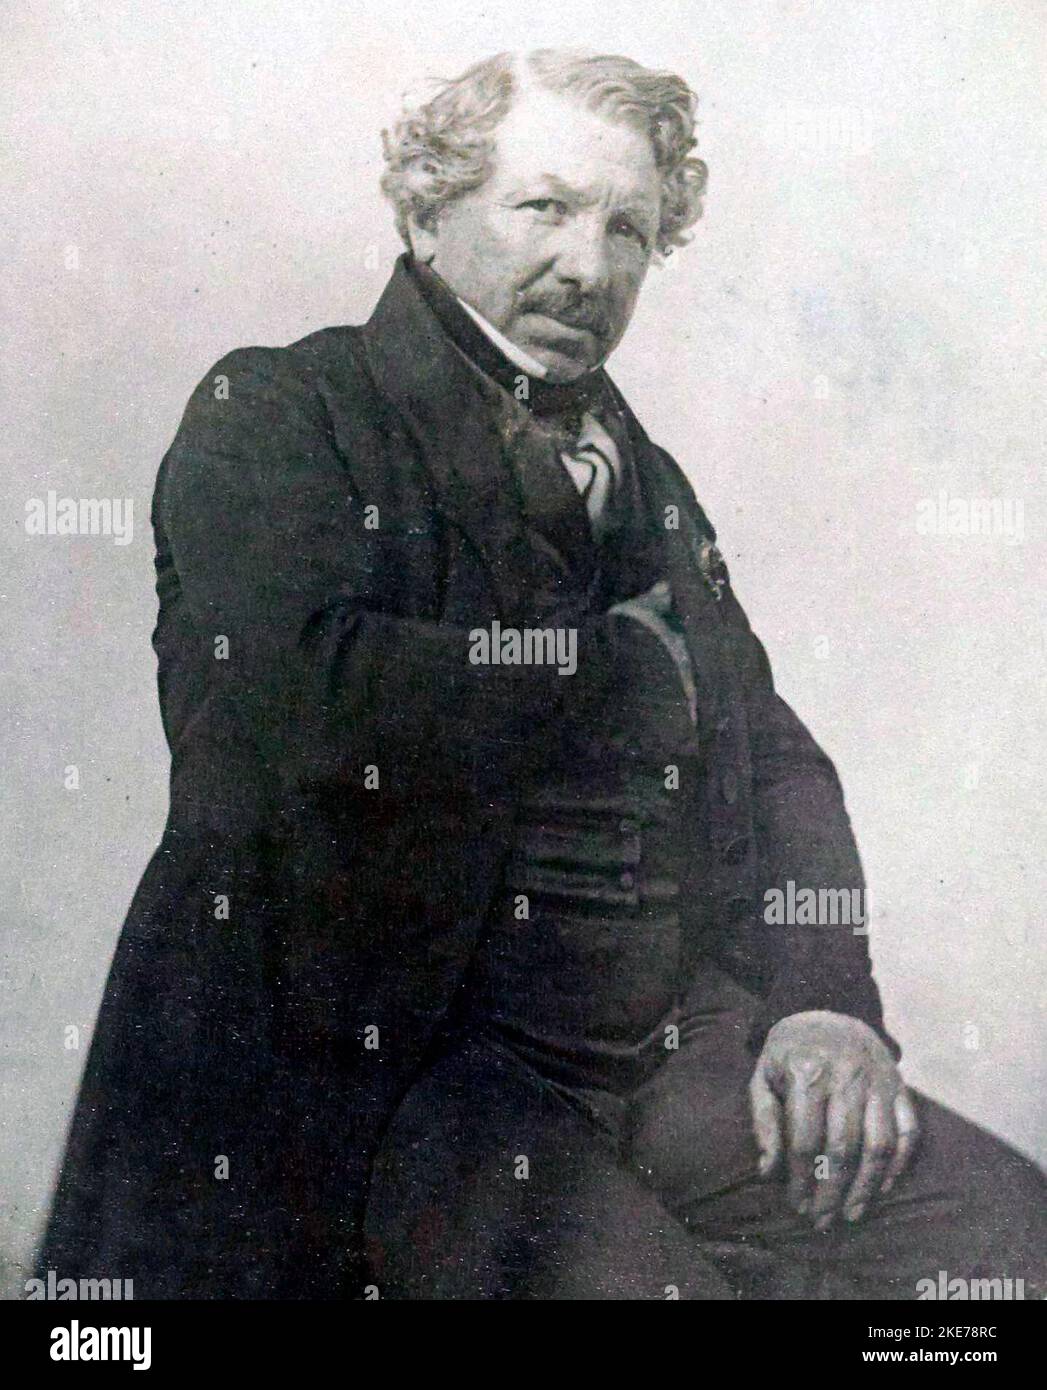 Louis Daguerre, Louis-Jacques-Mandé Daguerre (1787 – 1851) französischer Künstler und Fotograf, bekannt für seine Erfindung des Daguerreotypieprozesses der Fotografie Stockfoto